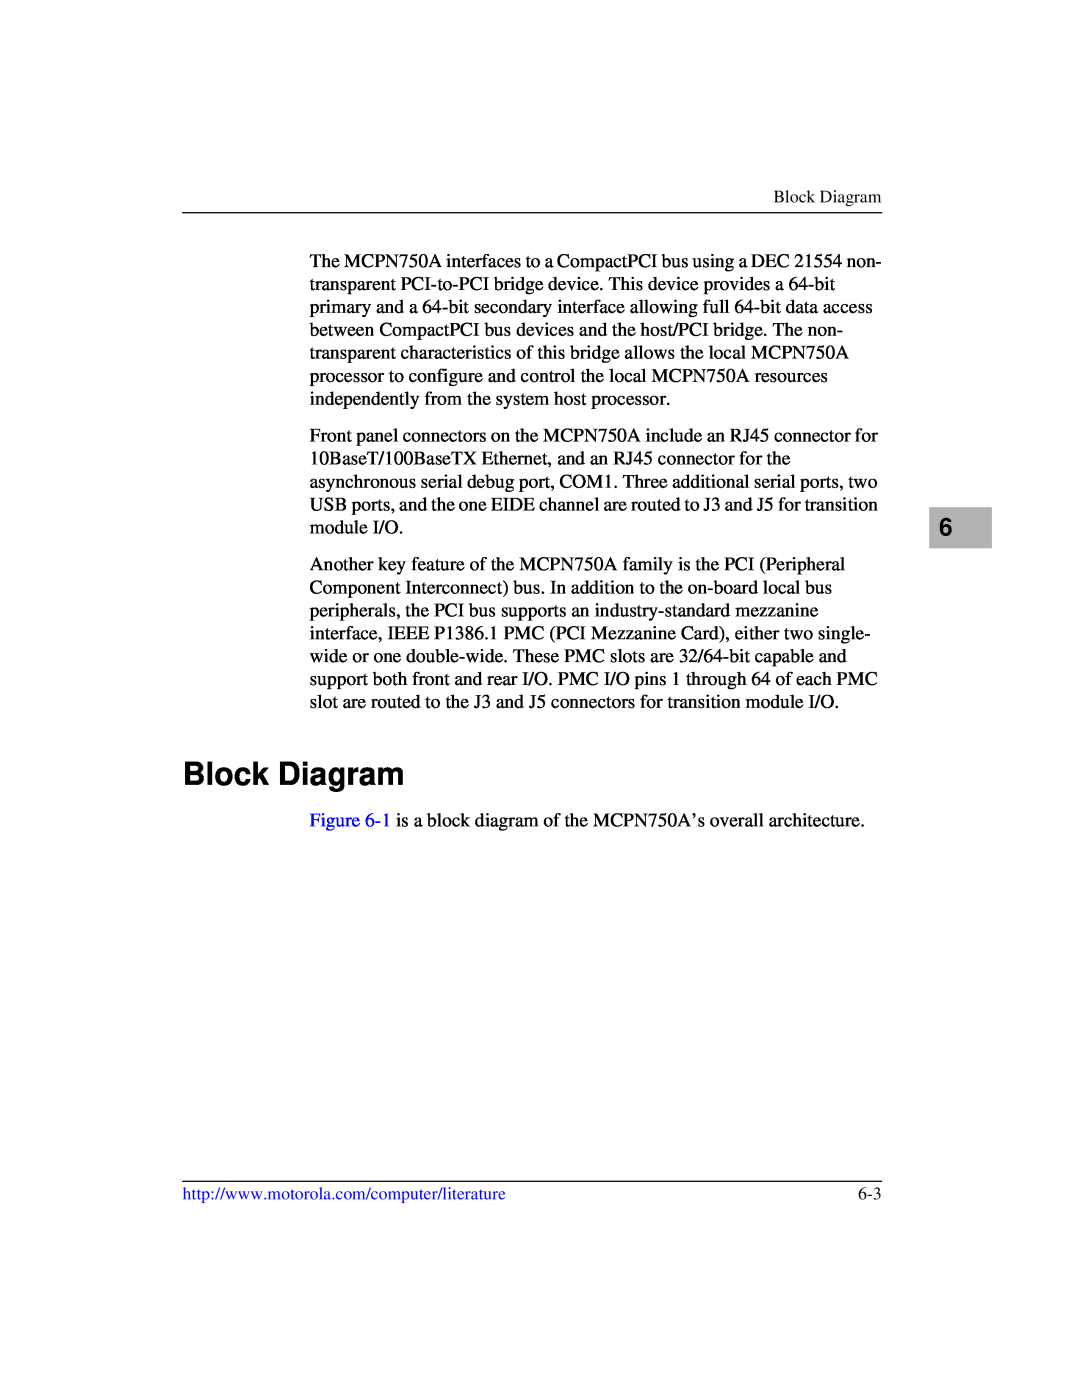 Motorola IH5, MCPN750A manual Block Diagram 